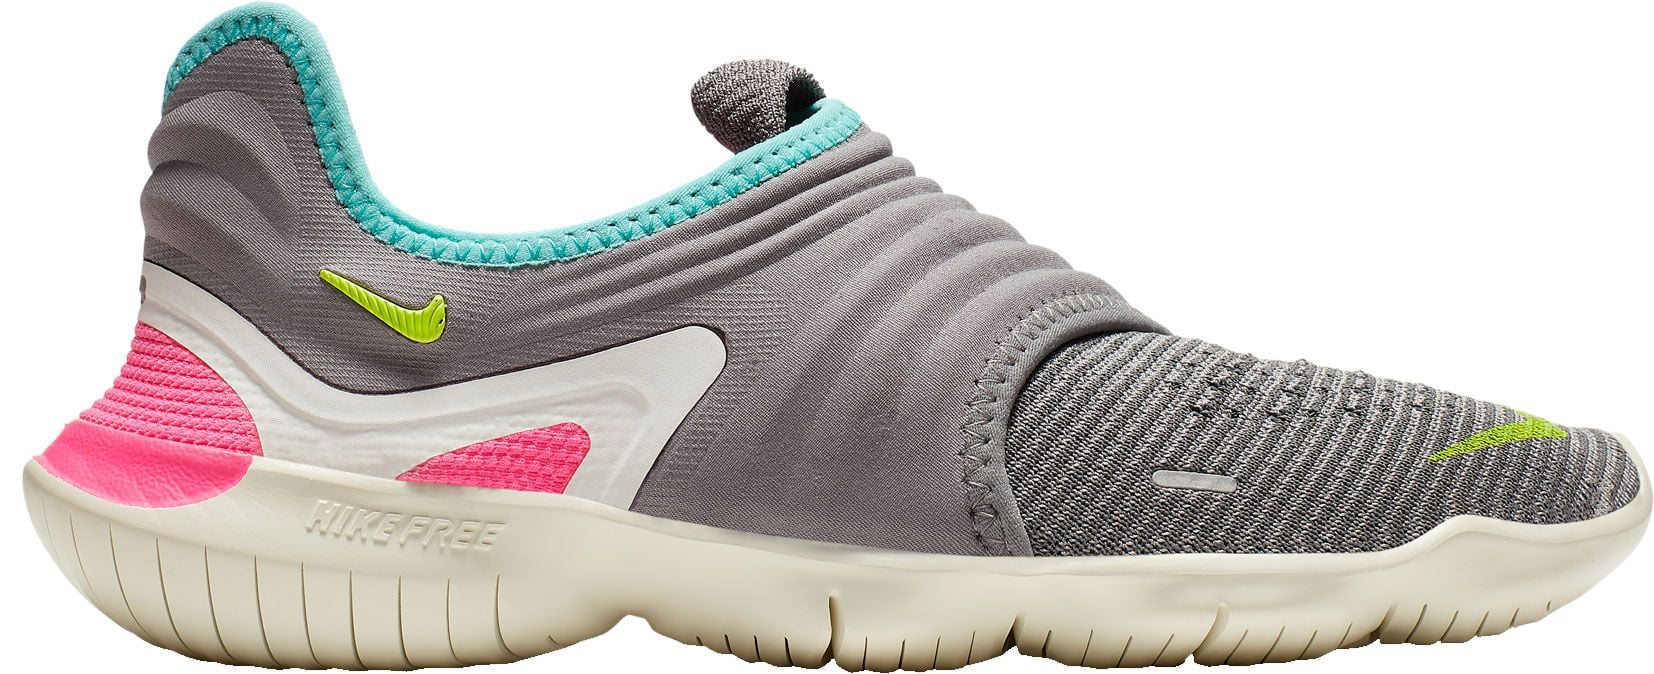 Nike - Nike Women's Free RN Flyknit 3.0 Running Shoes - Walmart.com ...